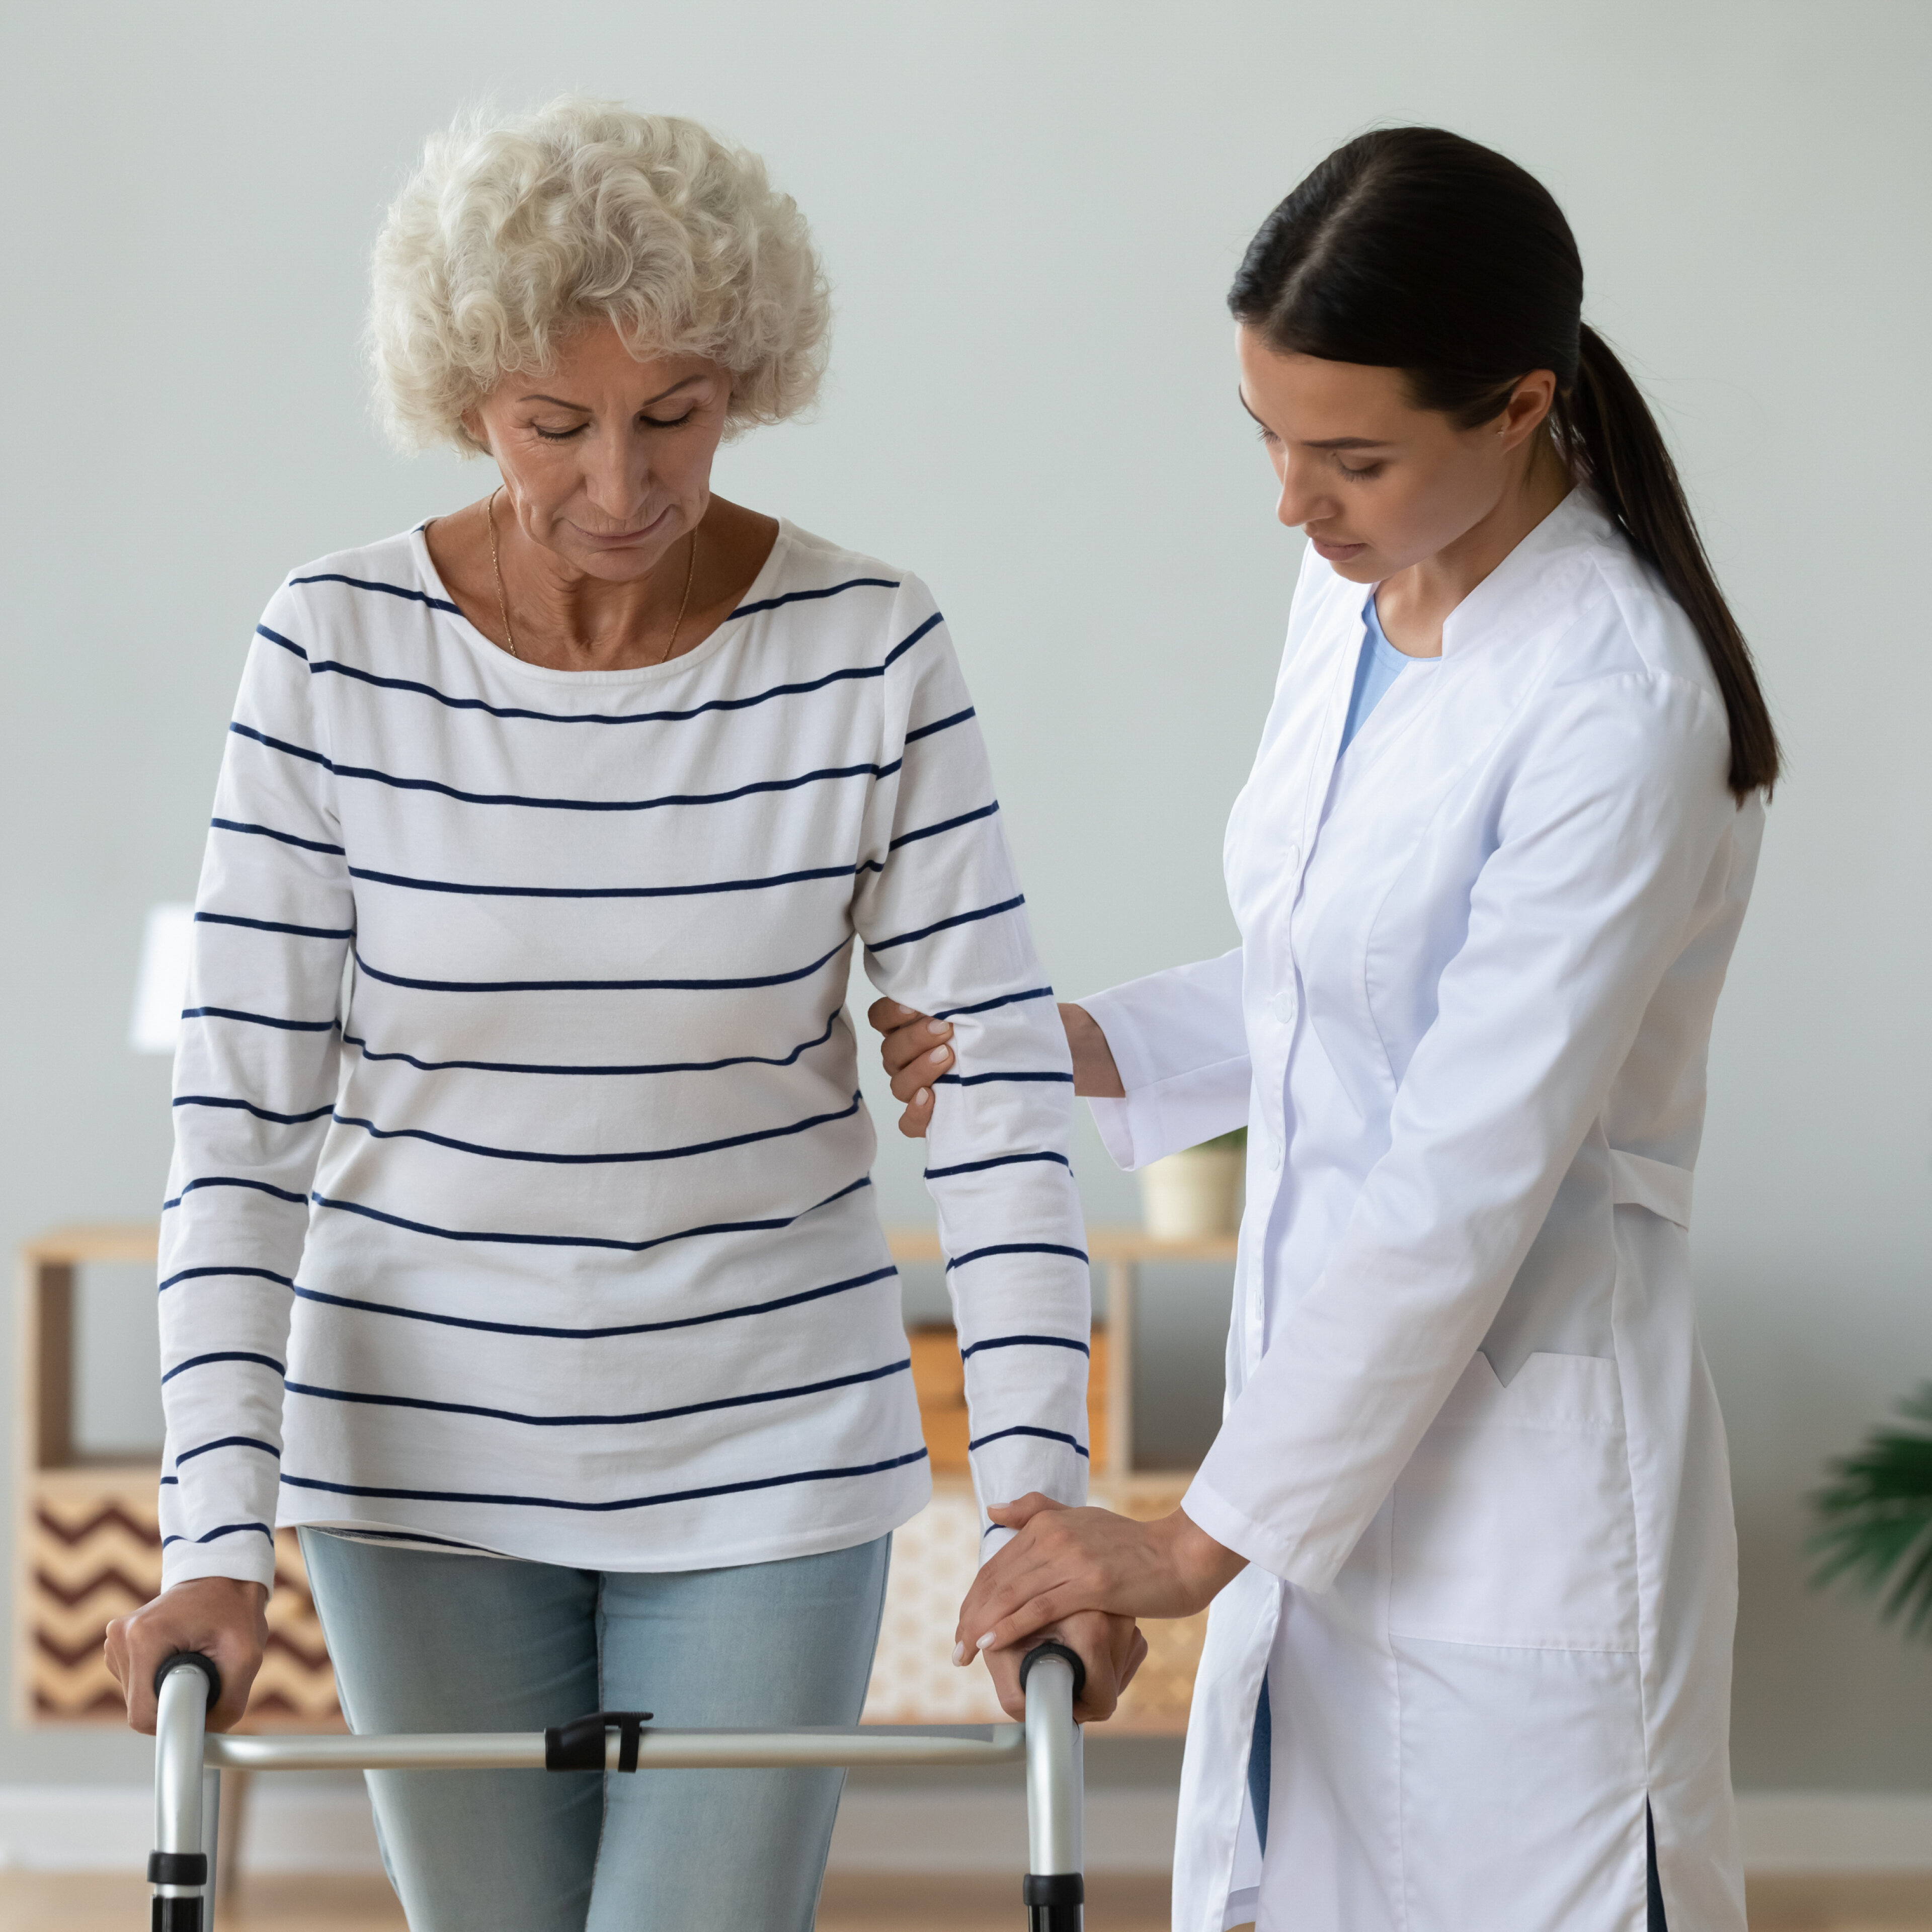 Médecin traitant aide une patiente âgée ave un exercice de réadaptation